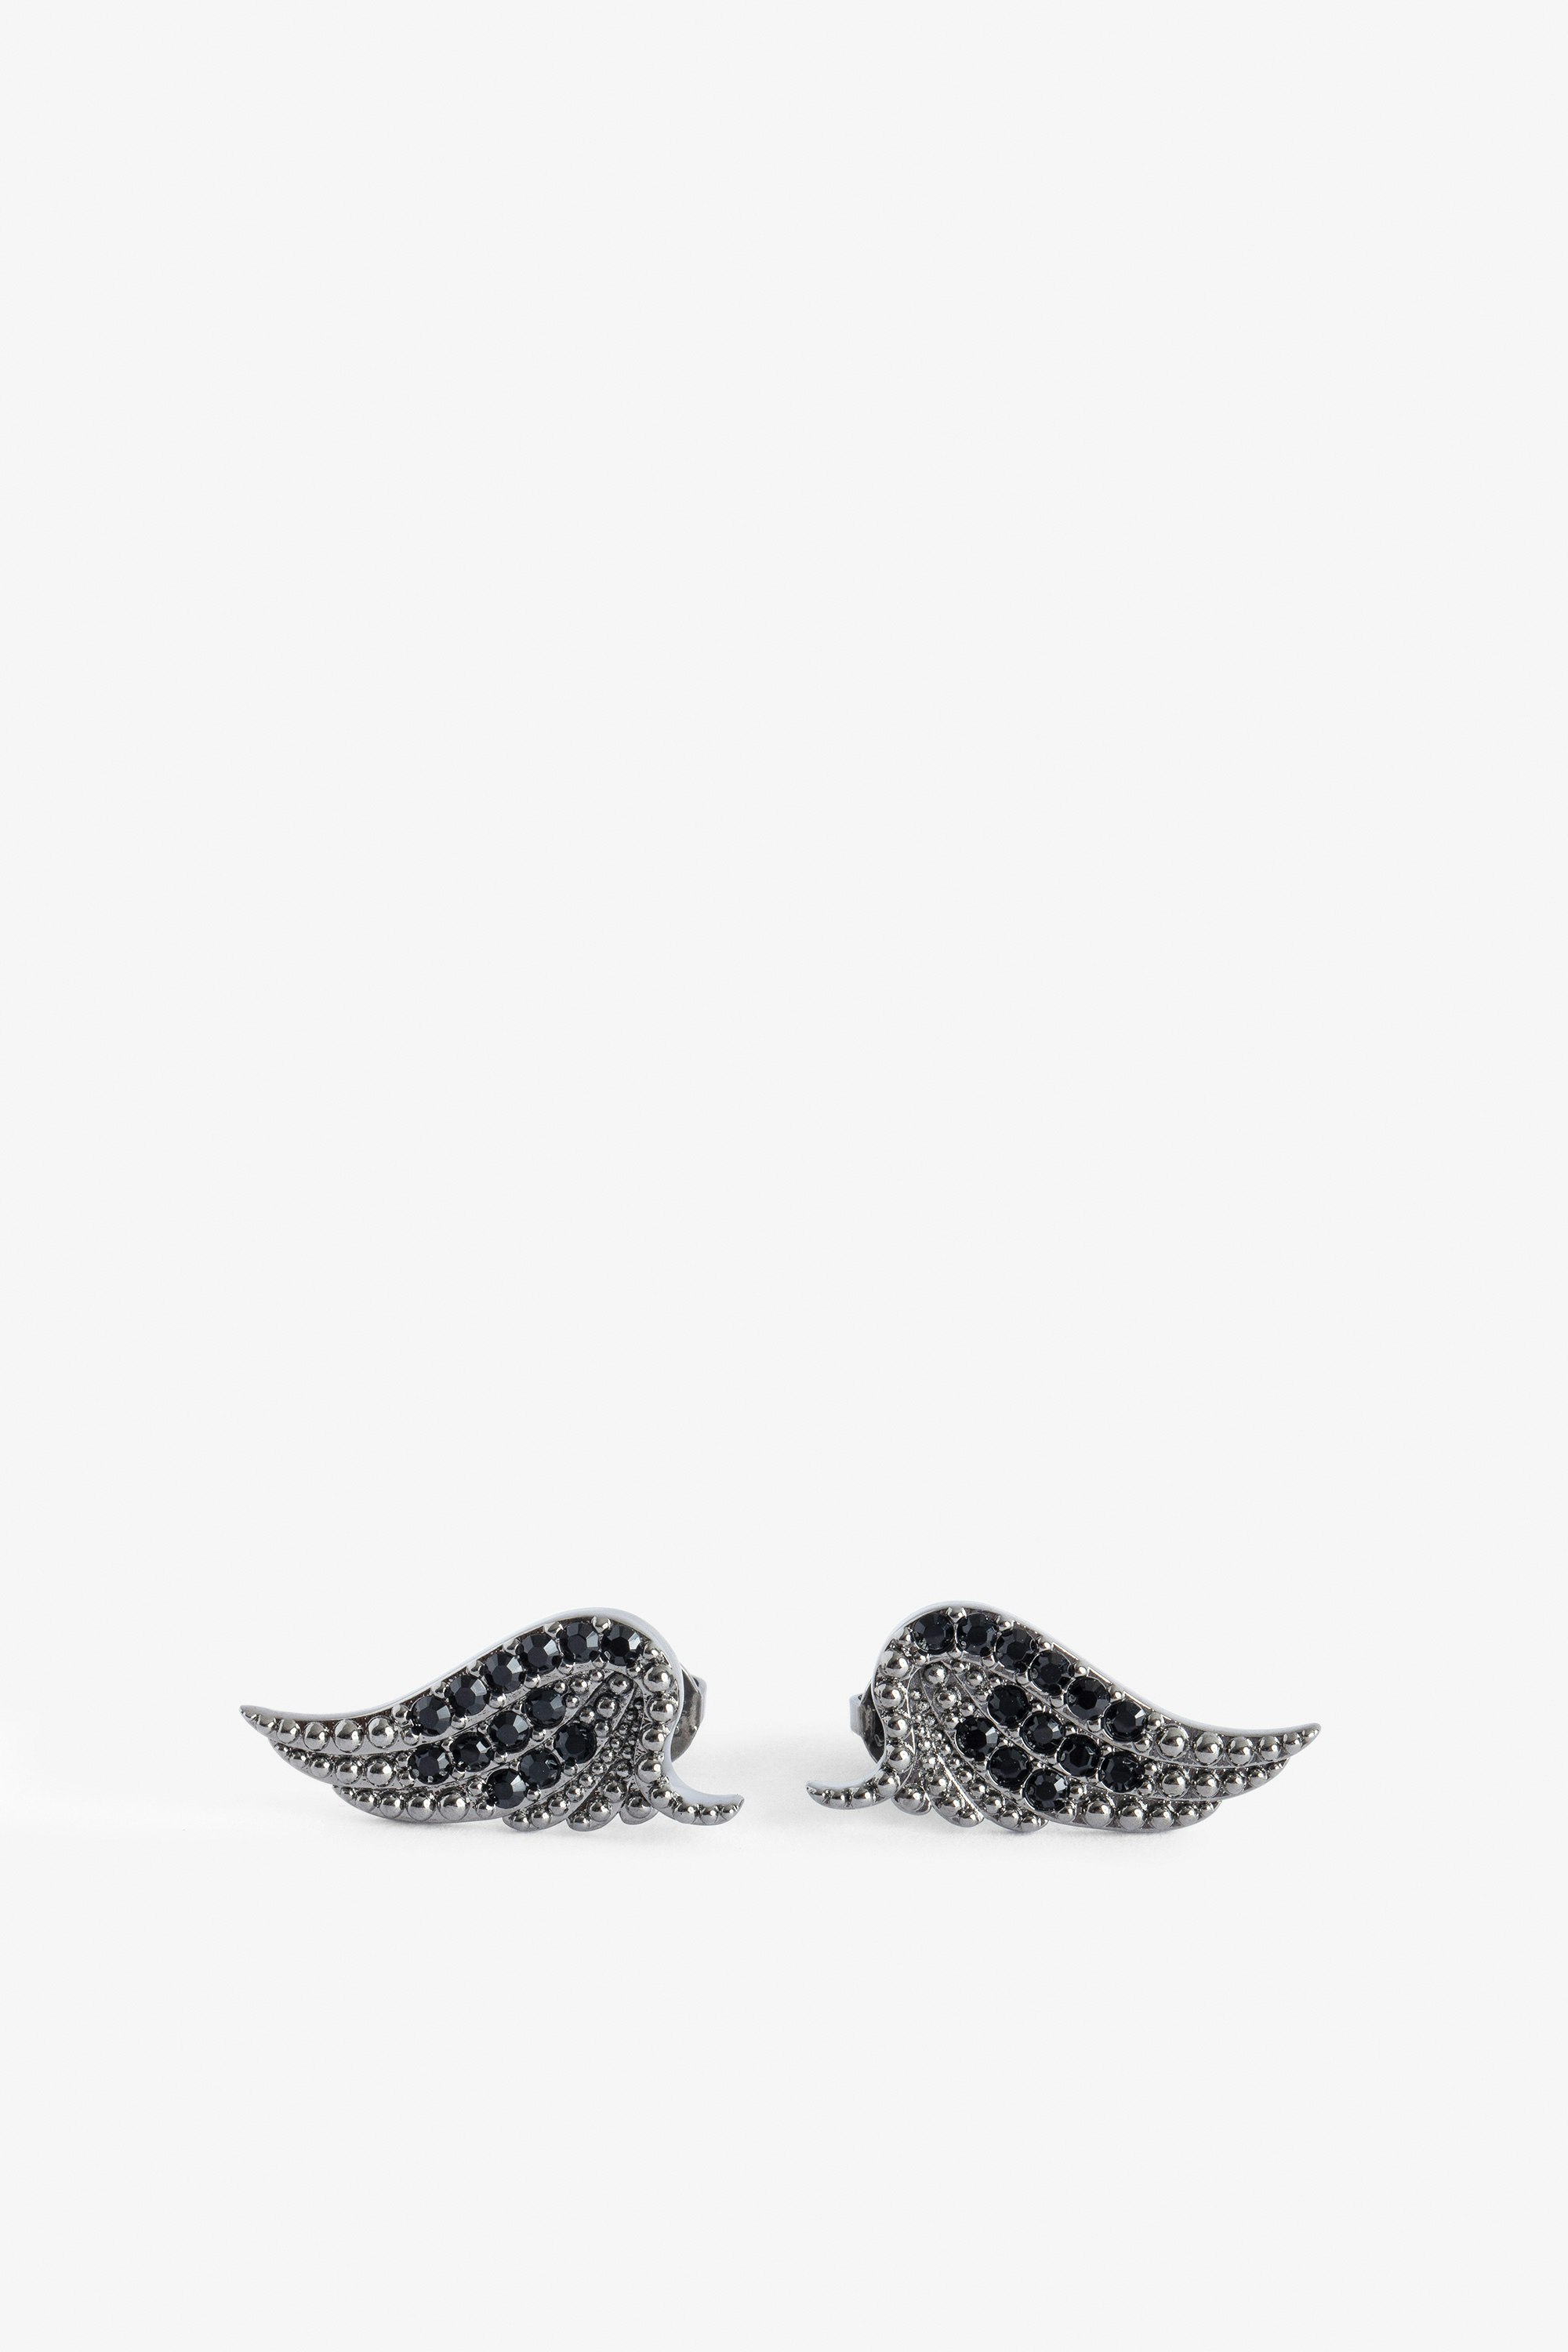 Ohrringe Rock - Ohrringe mit Strass Flügeln aus Messing.